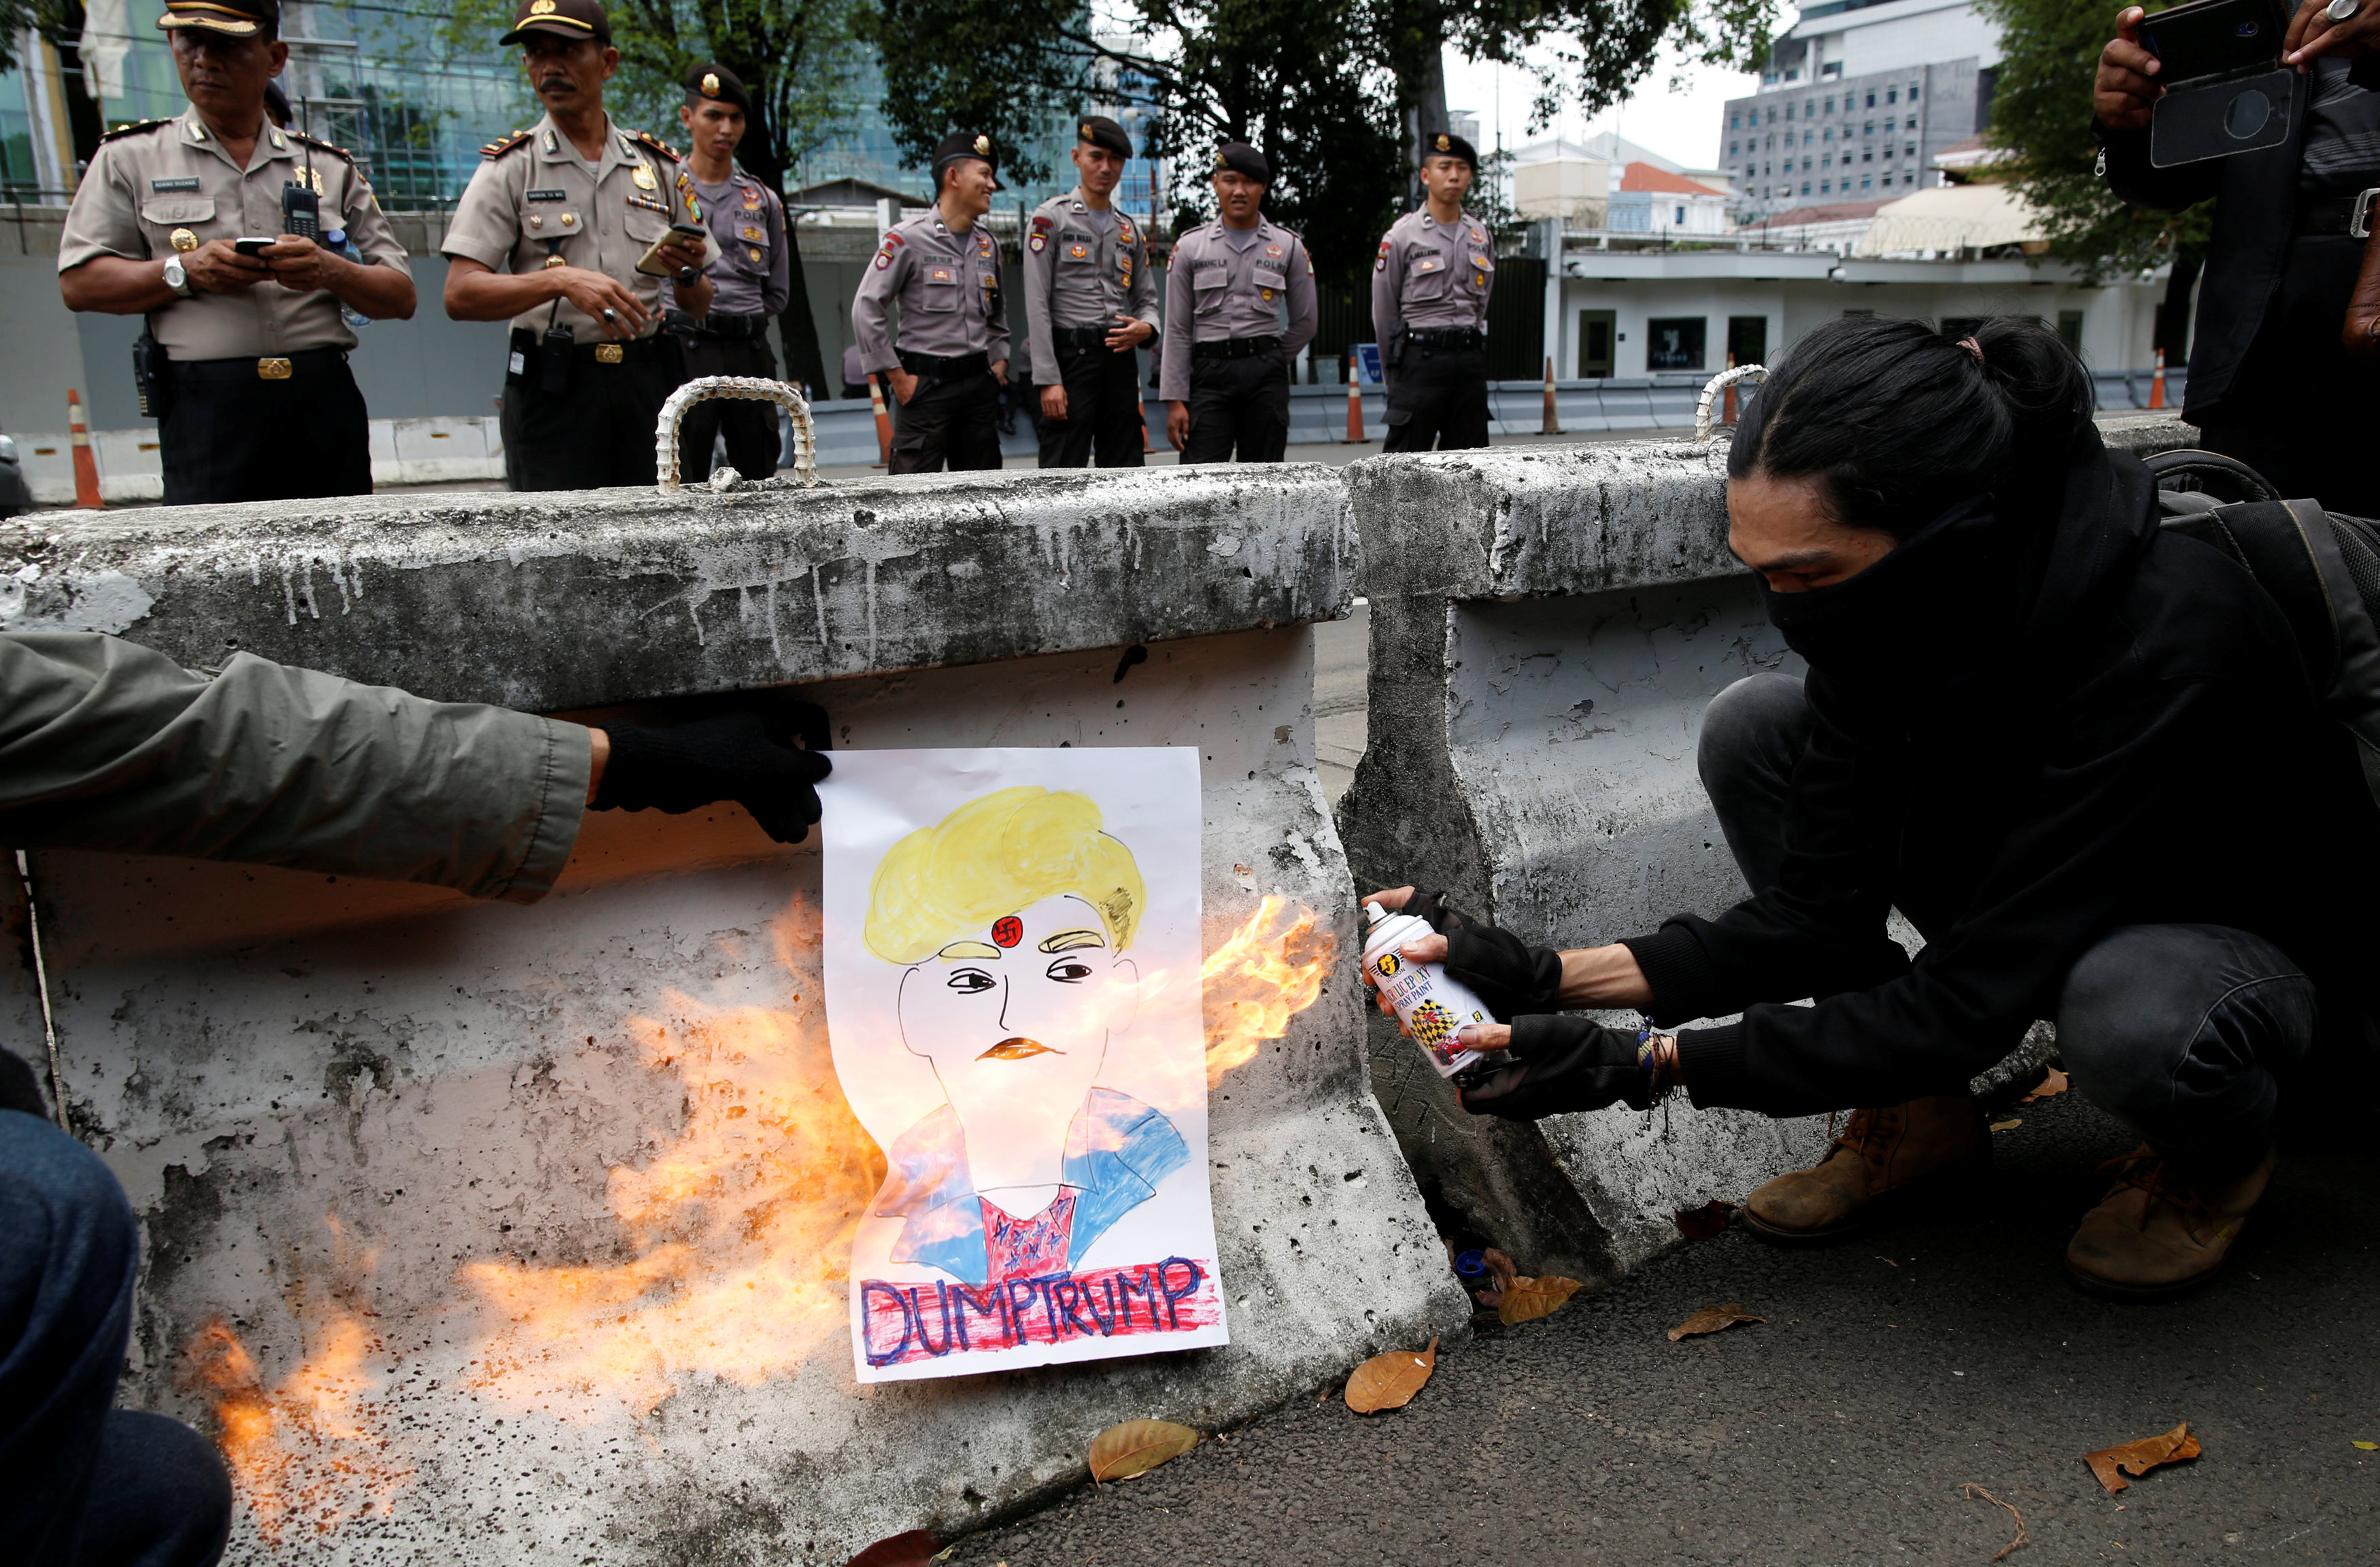 حرق صورة لترامب على جدار أمام السفارة الأمريكية بالفلبين